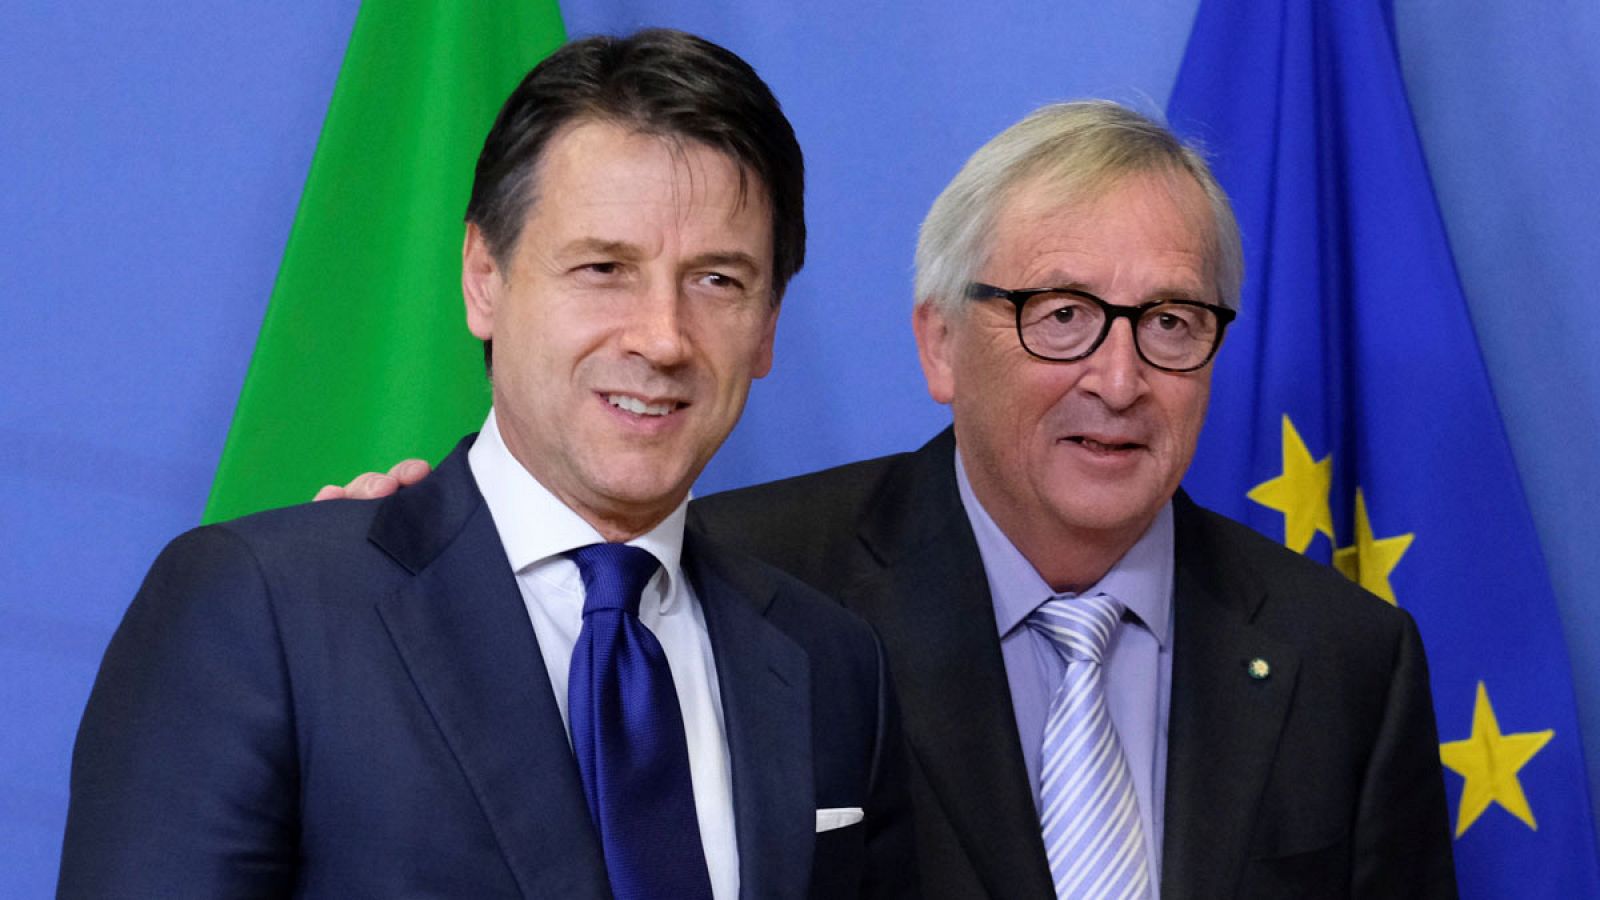 El presidente de la Comisión Europea, Jean-Claude Juncker, recibe al primer ministro italiano, Giuseppe Conte, antes de su reunión en Bruselas